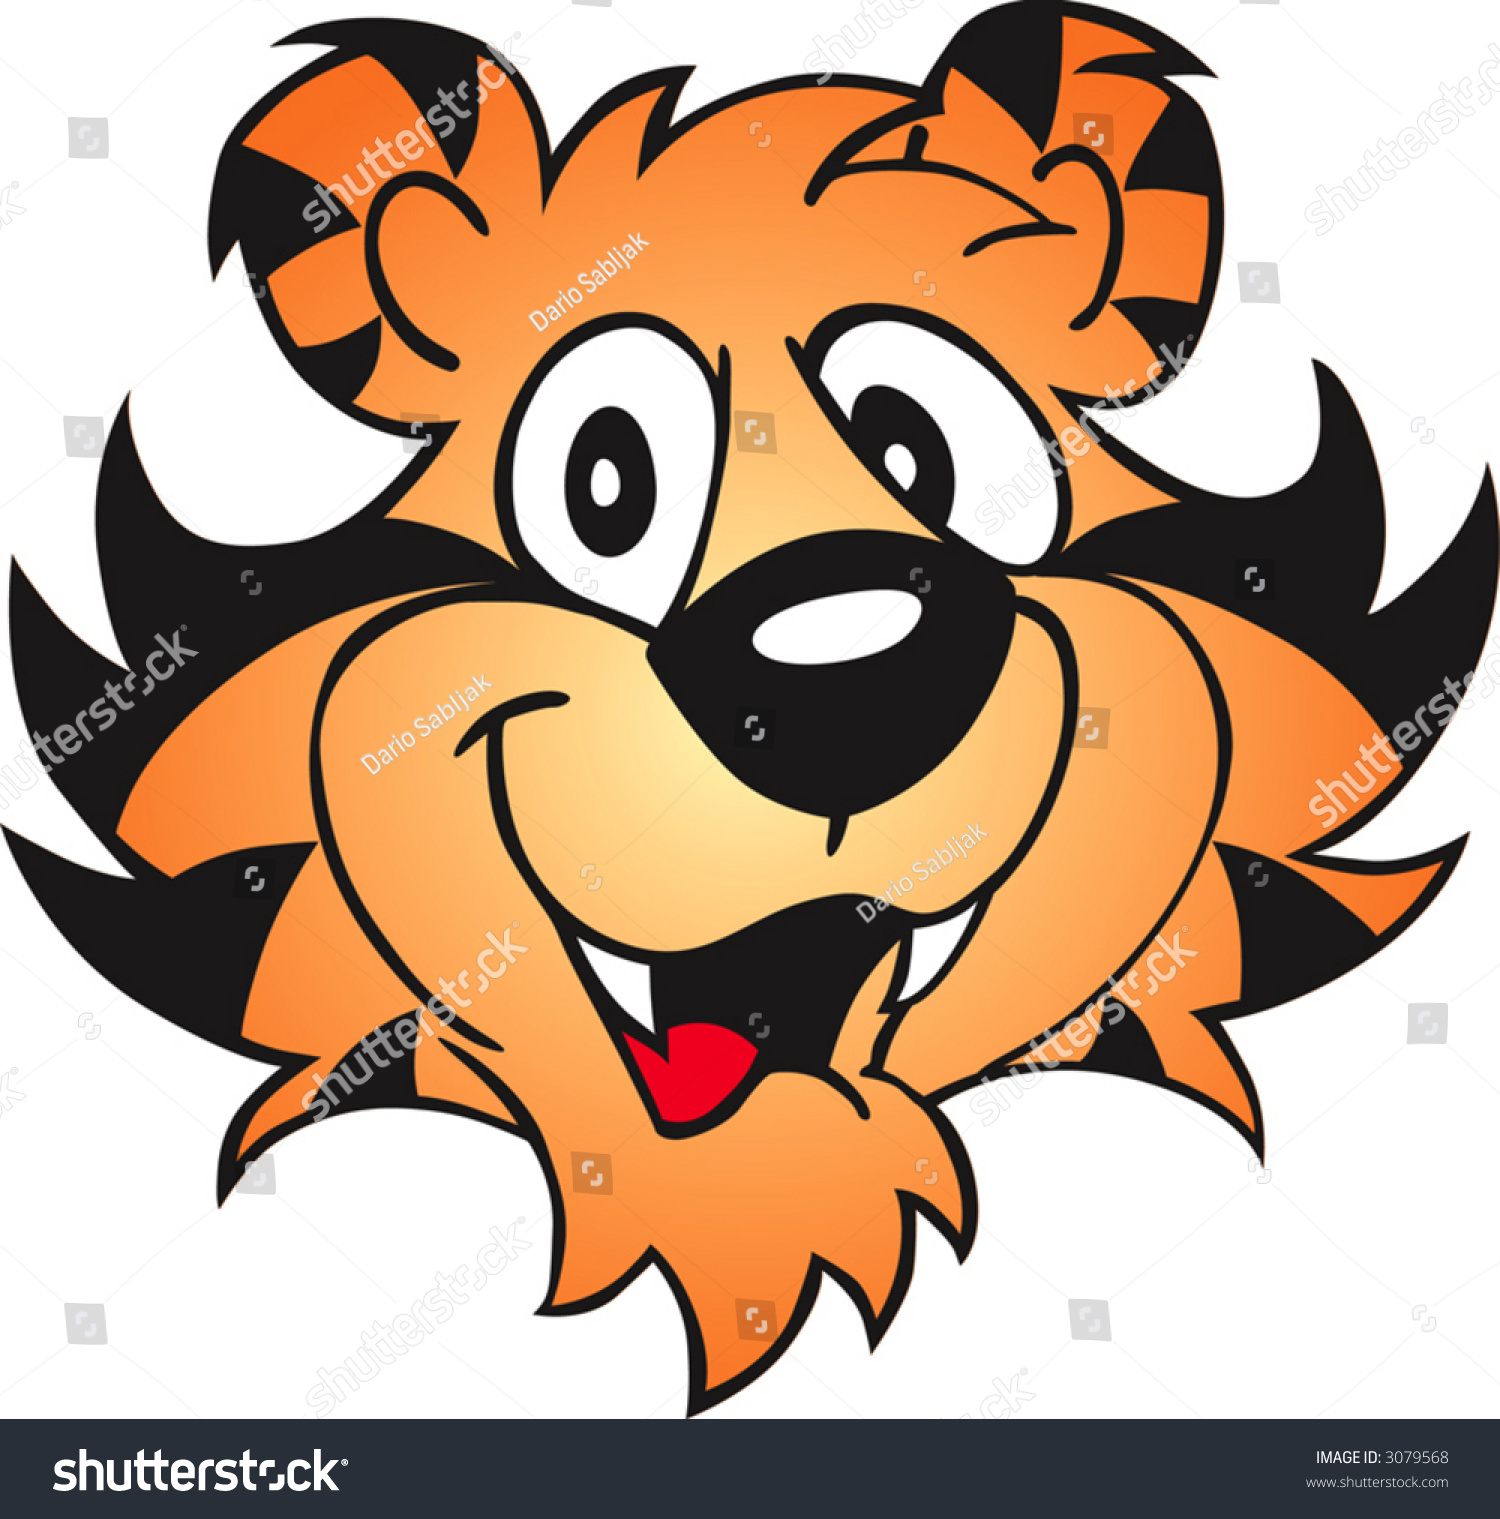 Cartoon Tiger Face Stock Vector 3079568 - Shutterstock